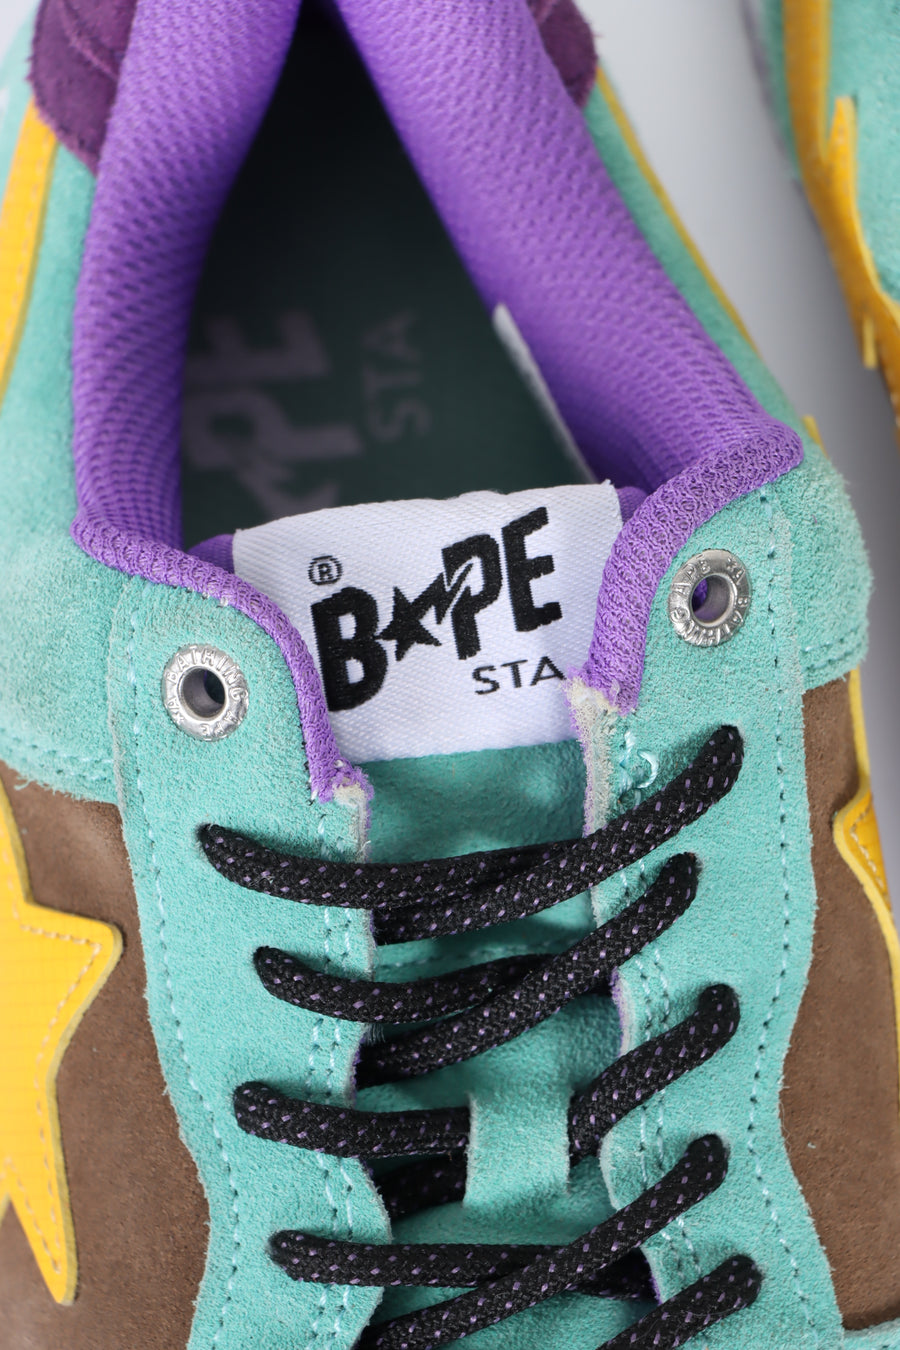 REPLICA Bape Bapesta #2 'Teal/Brown/Yellow' Low Sneakers (9.5)